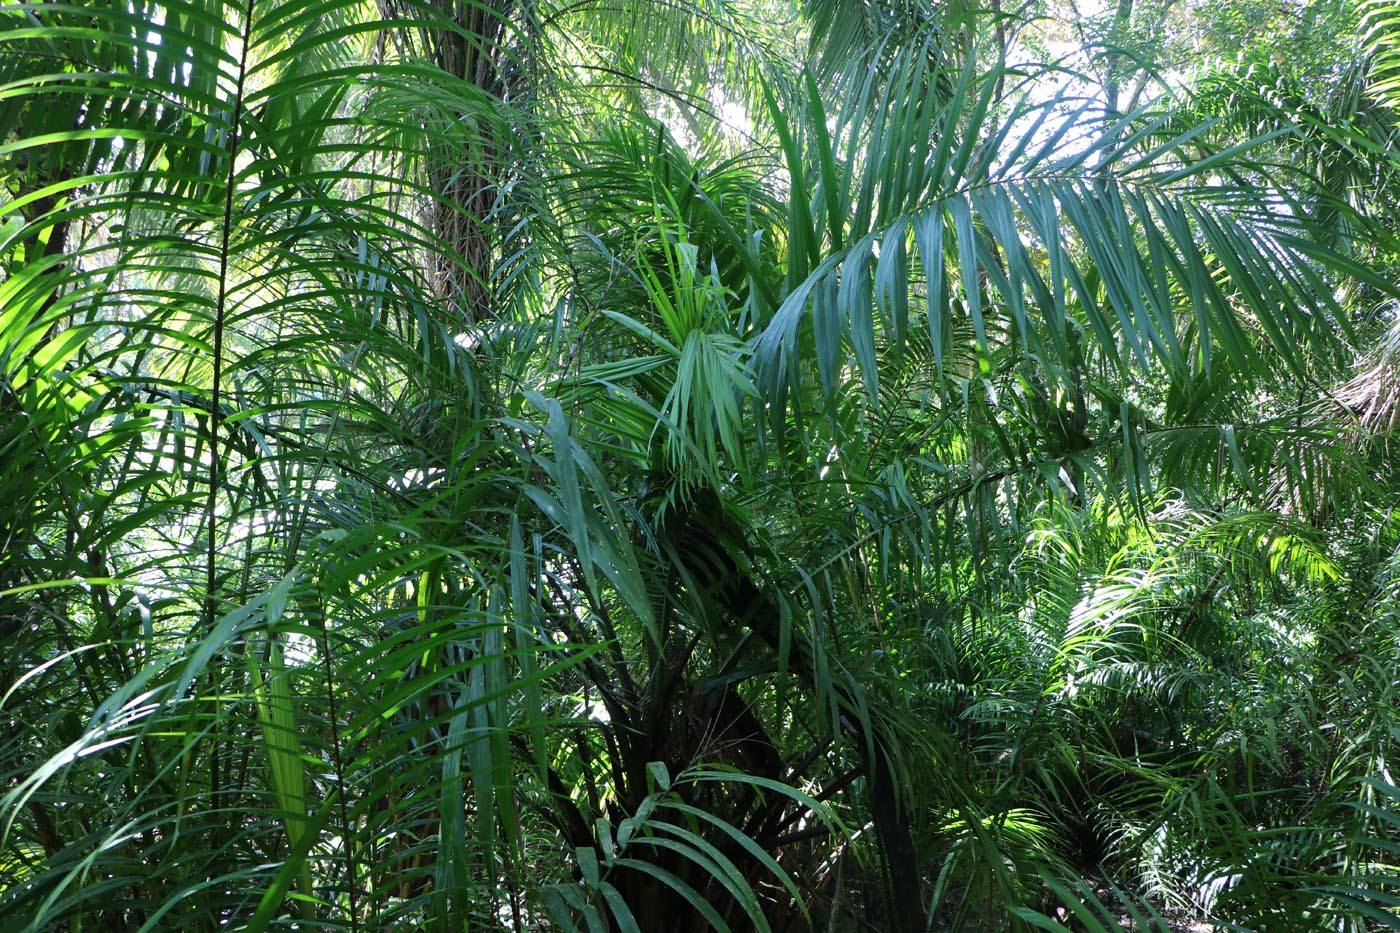 Baru Wildlife Reserve Costa Rica Ecotour 2021 Vegetation